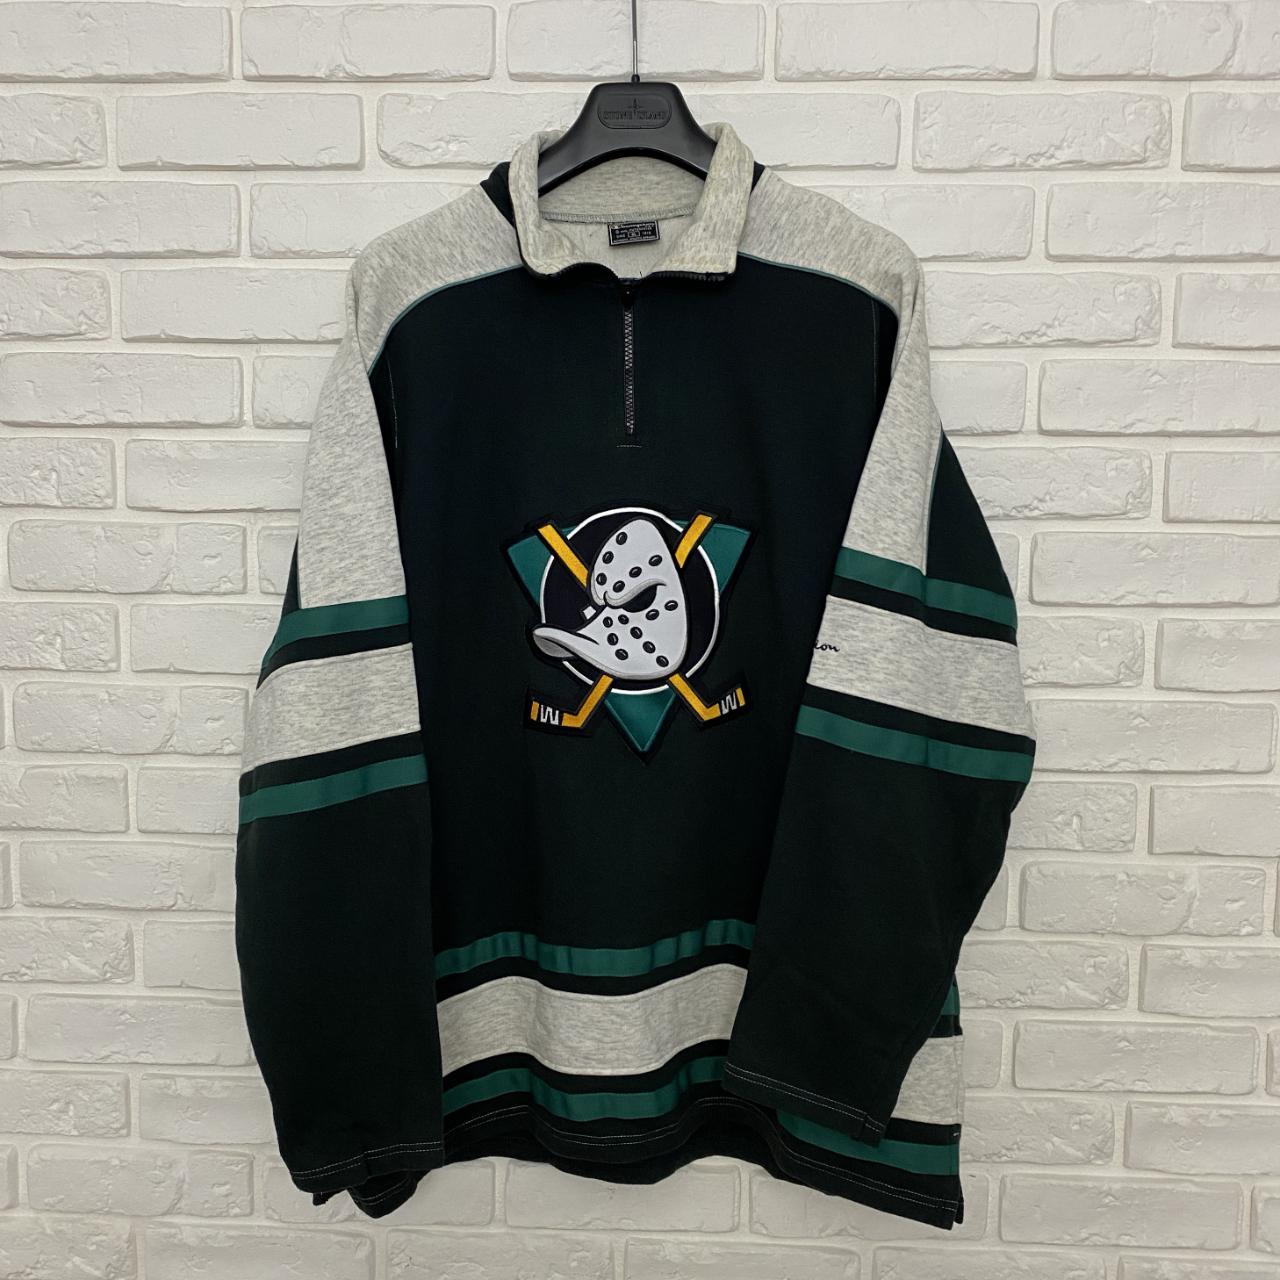 Vintage 90s Starter Anaheim Mighty Ducks Nhl Hockey Jersey Size